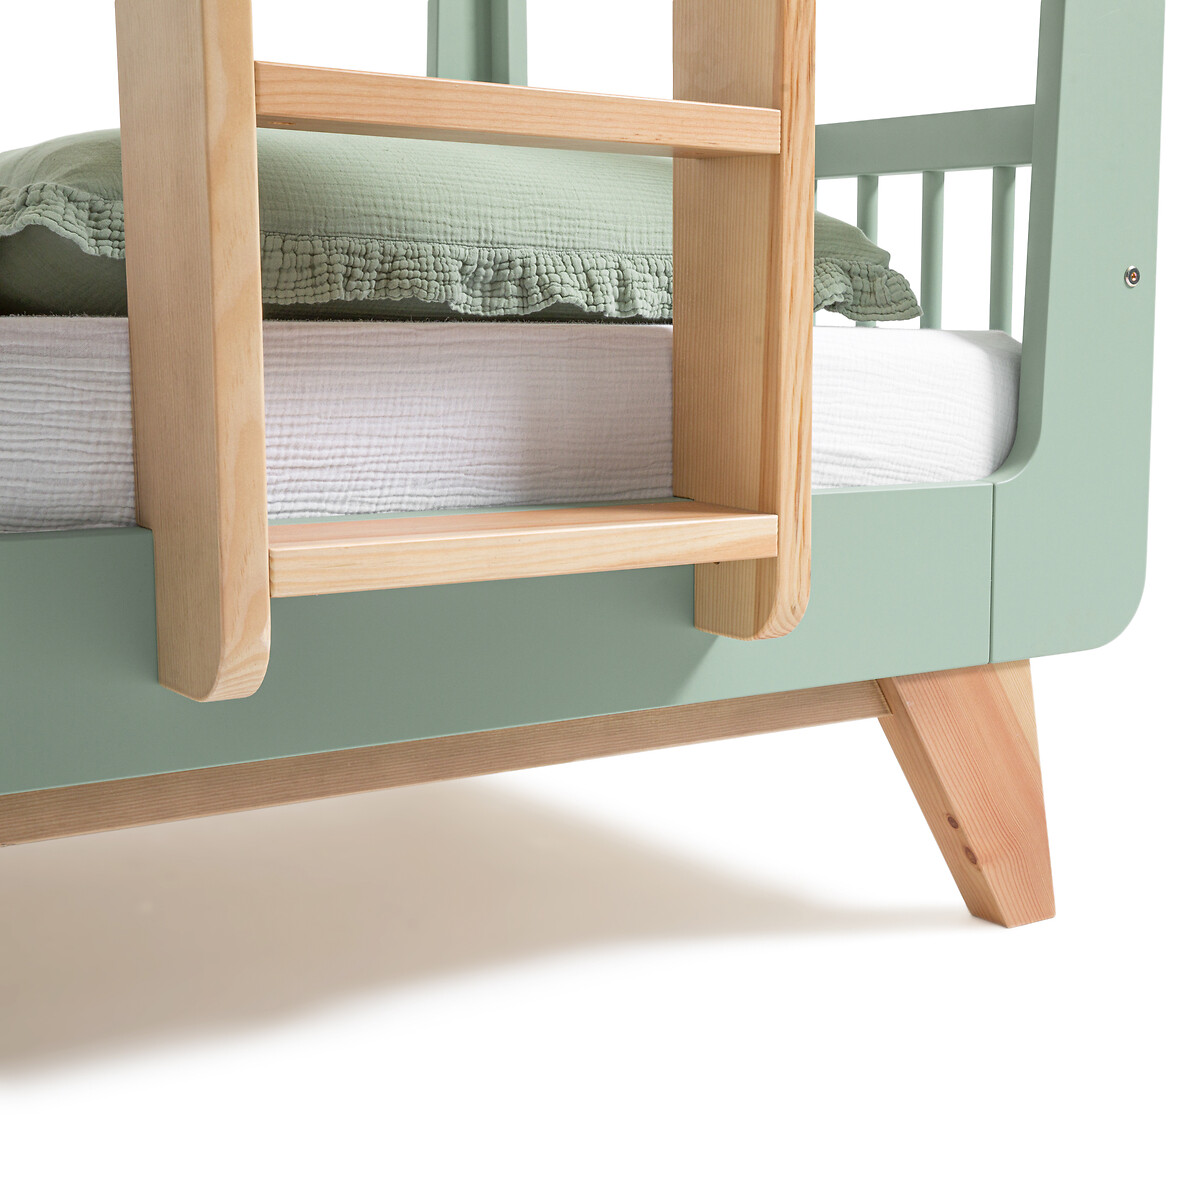 Кровать Двухъярусная Willox 90 x 190 см зеленый LaRedoute, размер 90 x 190 см - фото 5